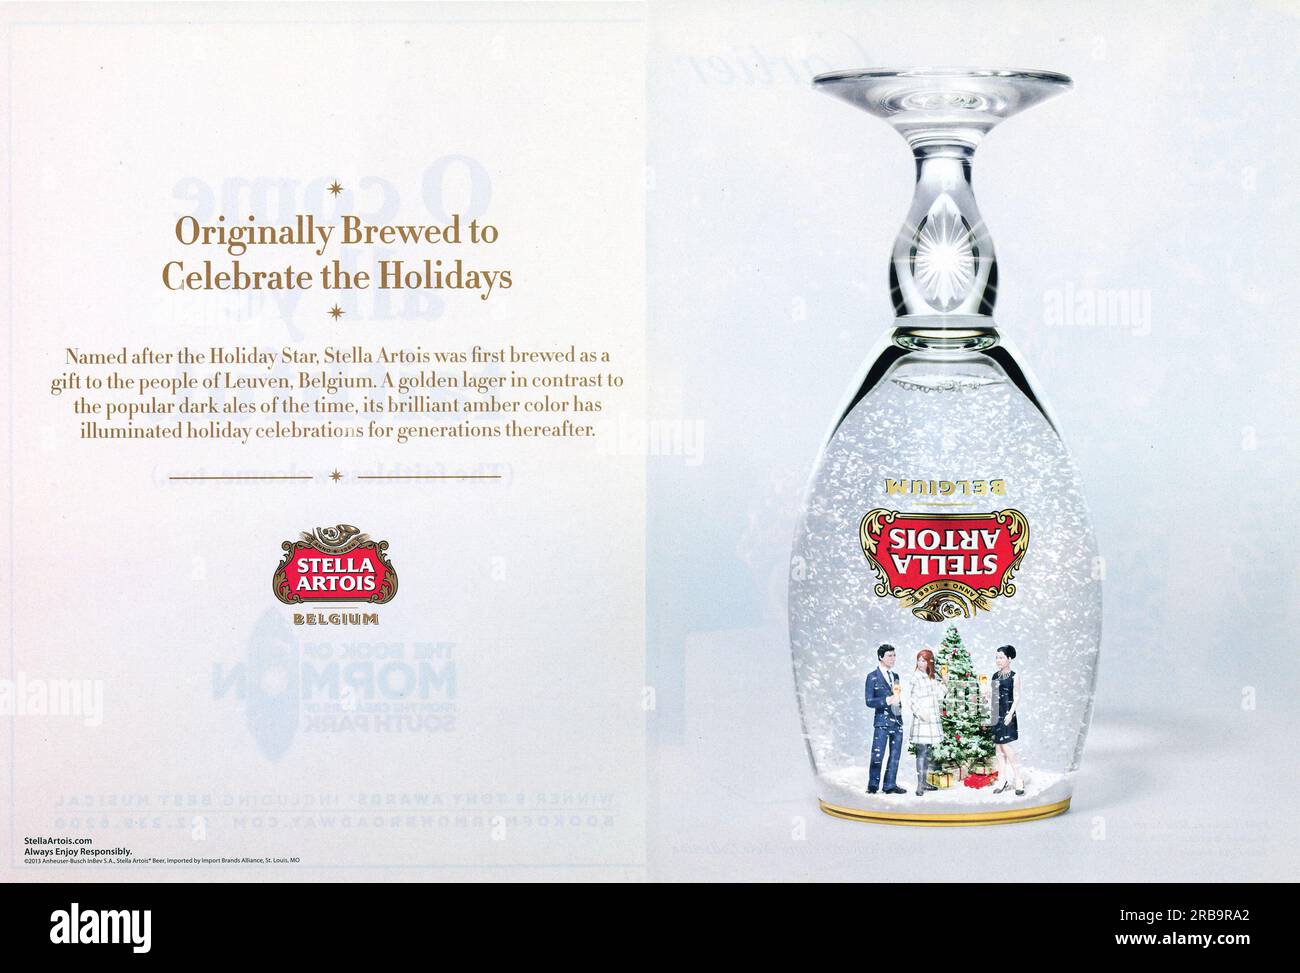 Brand Spotlight: Stella Artois